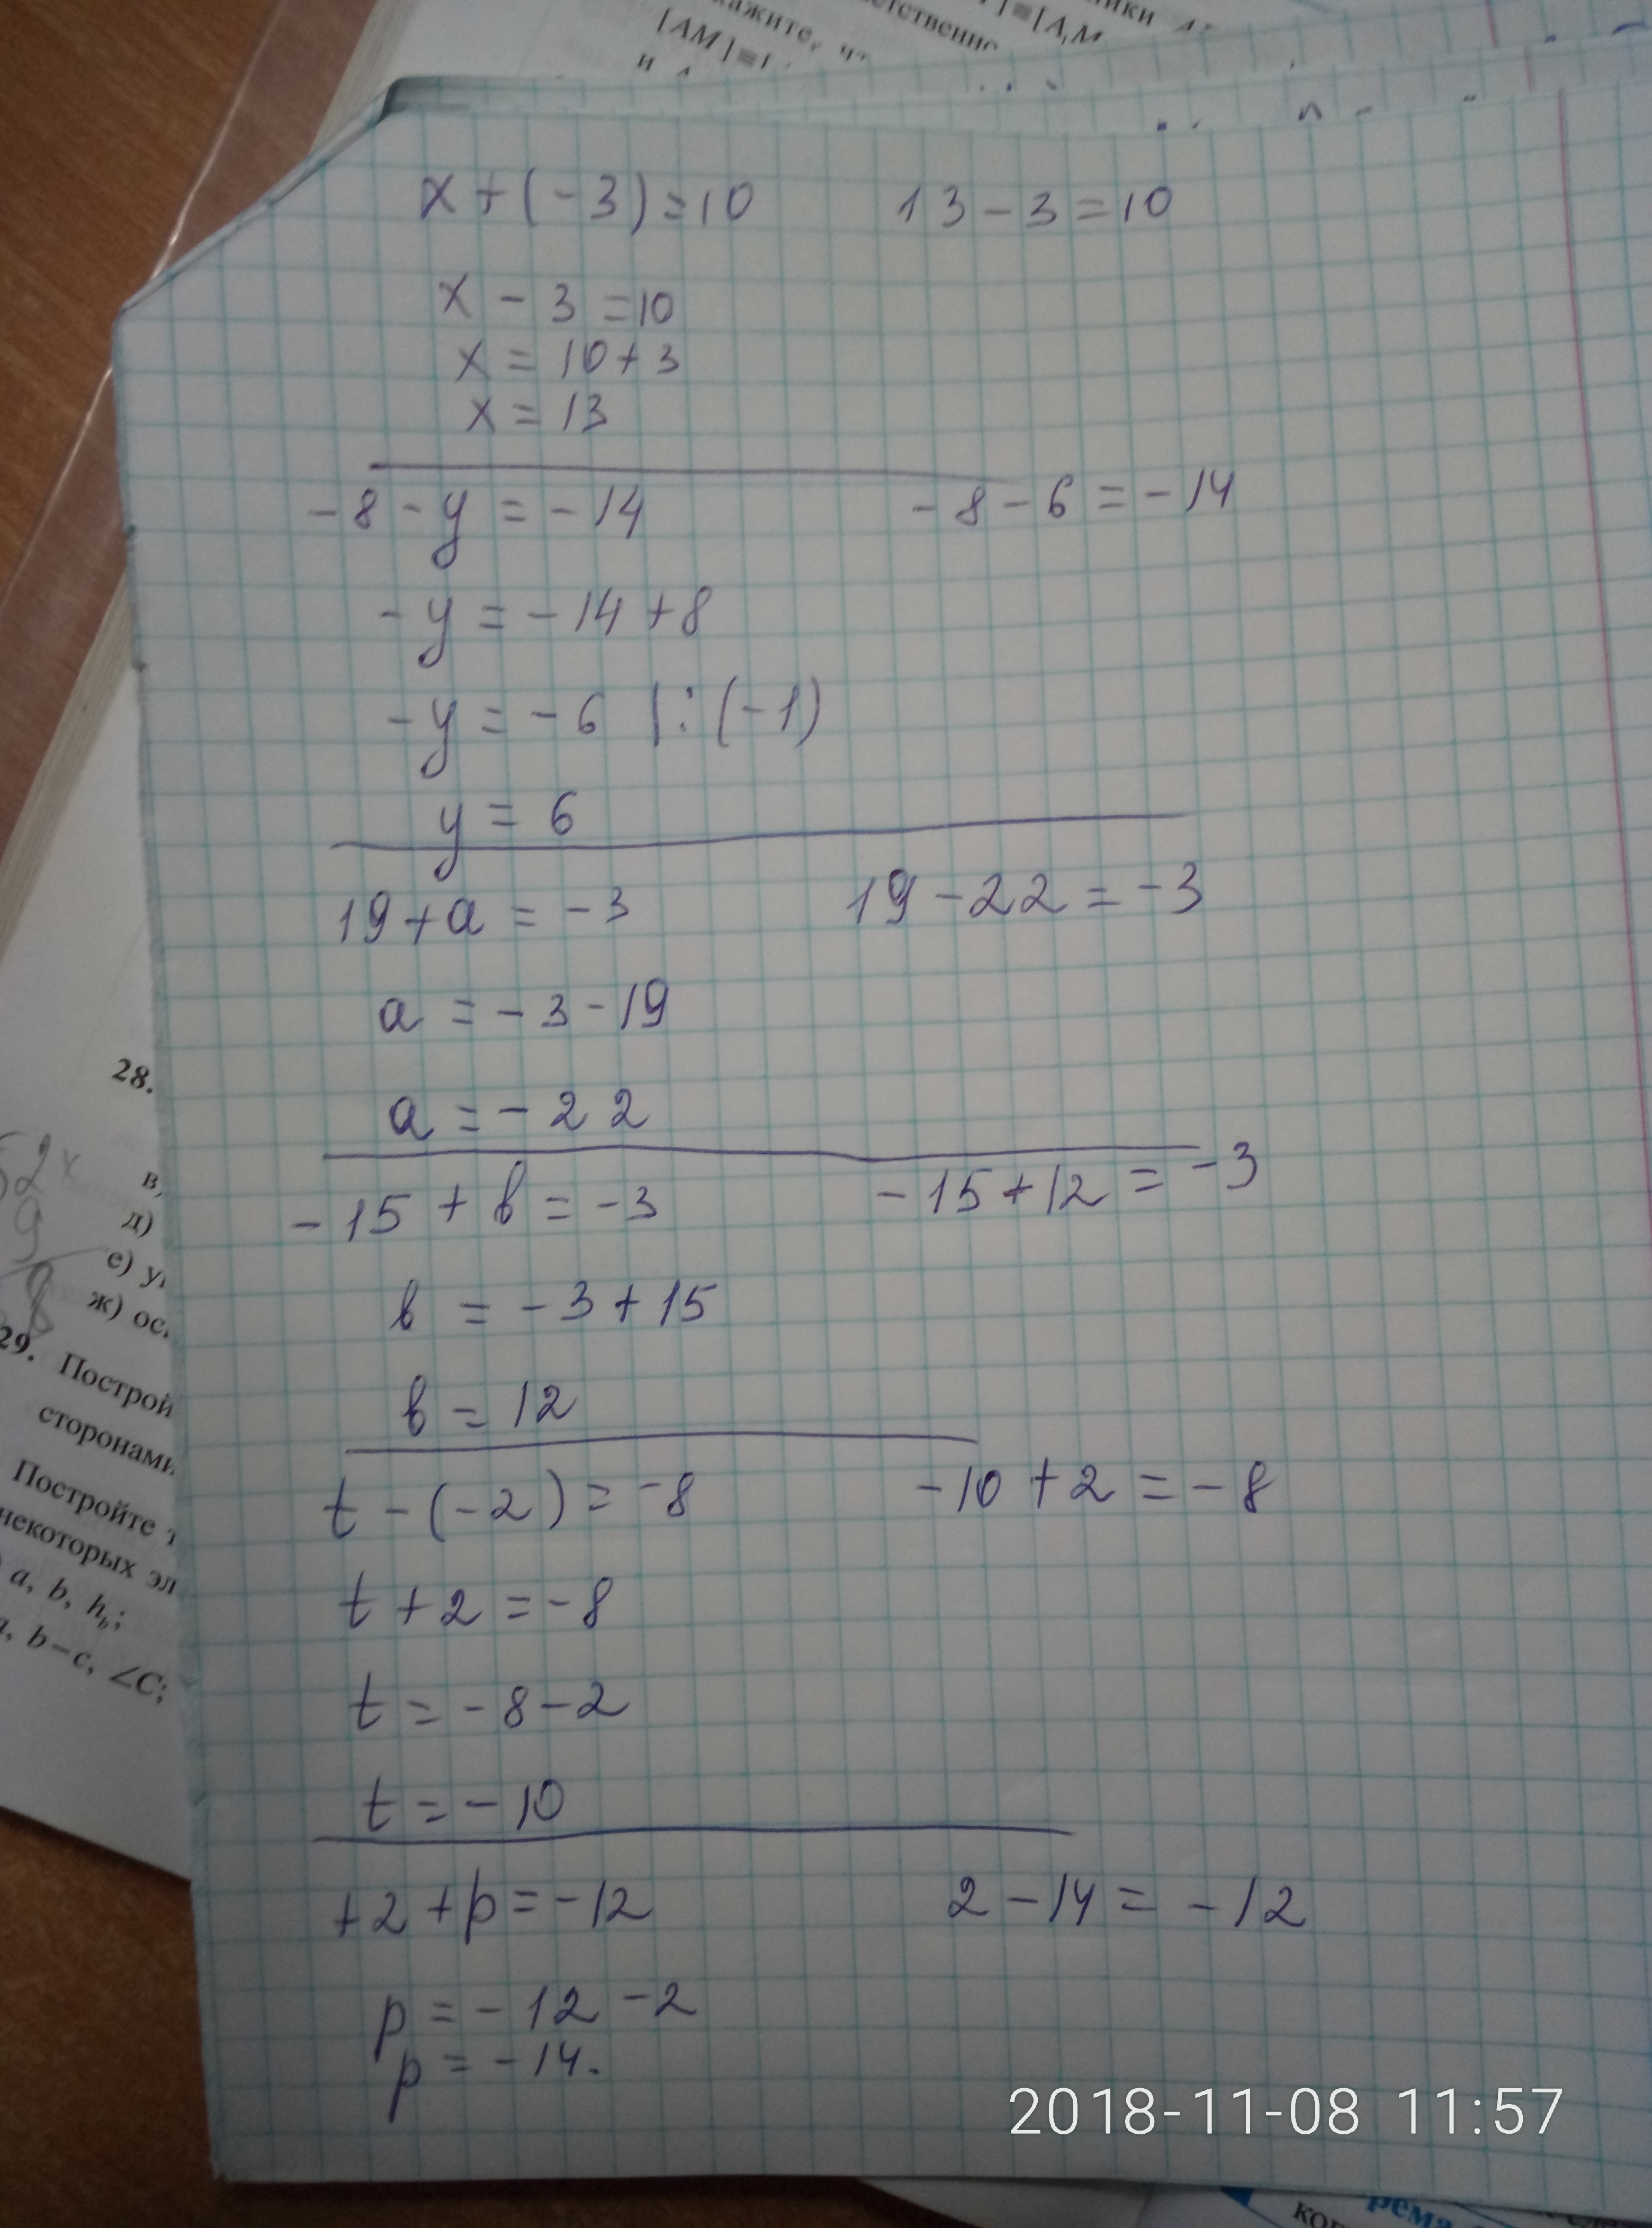 3x 1 19. Ответ 8= x=2. X^3-6x^2+3x+21=0 решение. 8/X-3-10/X 2. X-3 ответ.